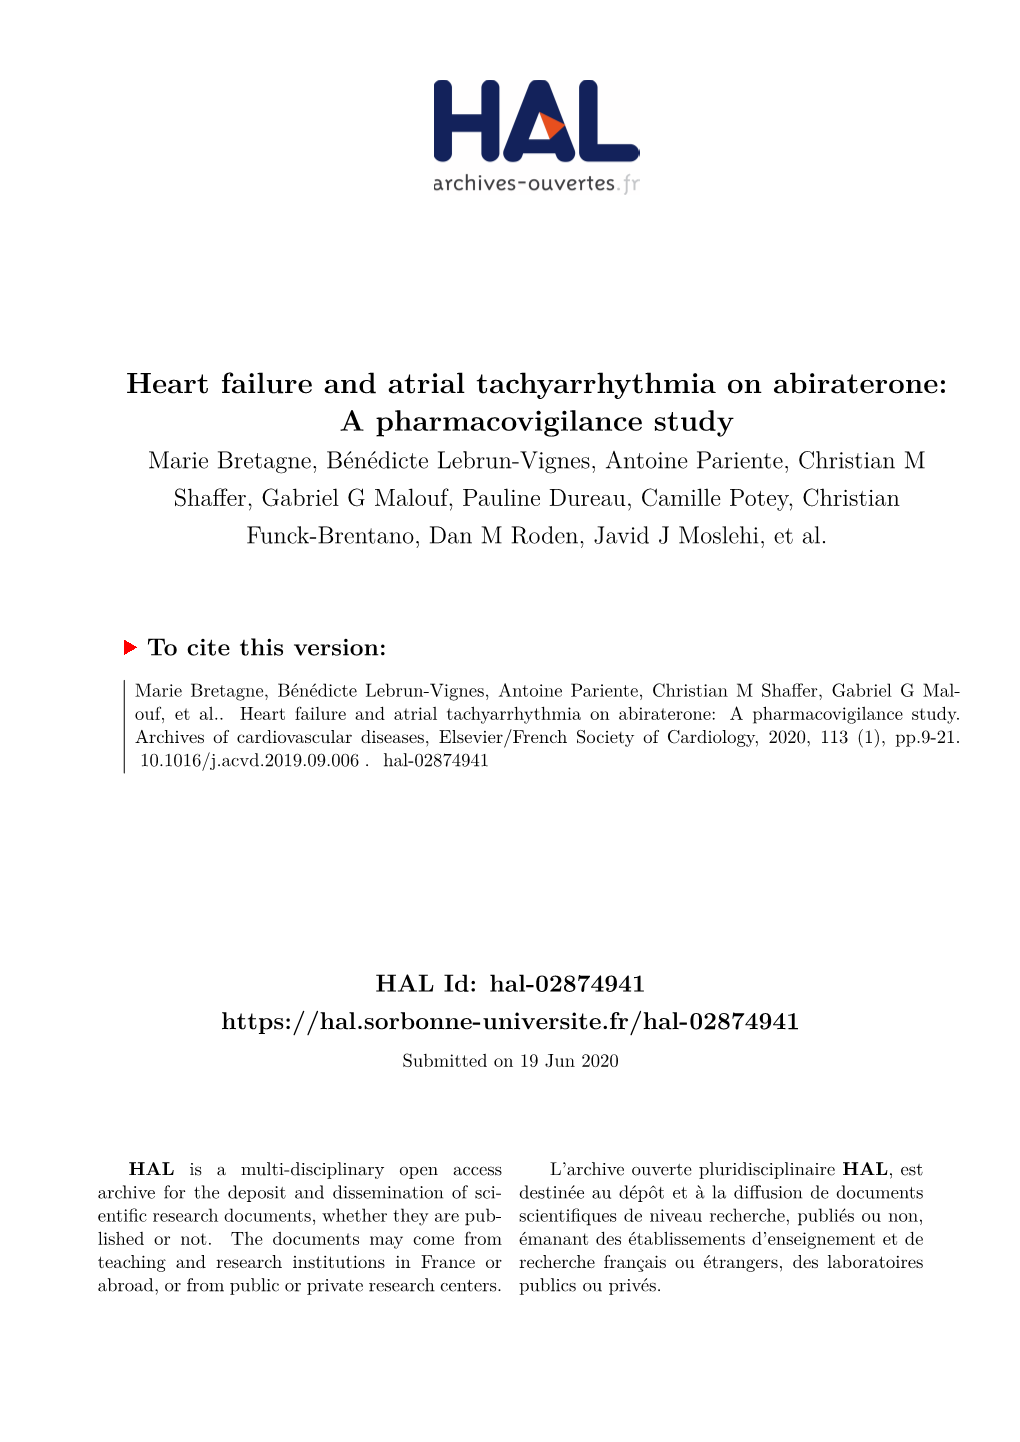 Heart Failure and Atrial Tachyarrhythmia on Abiraterone: A